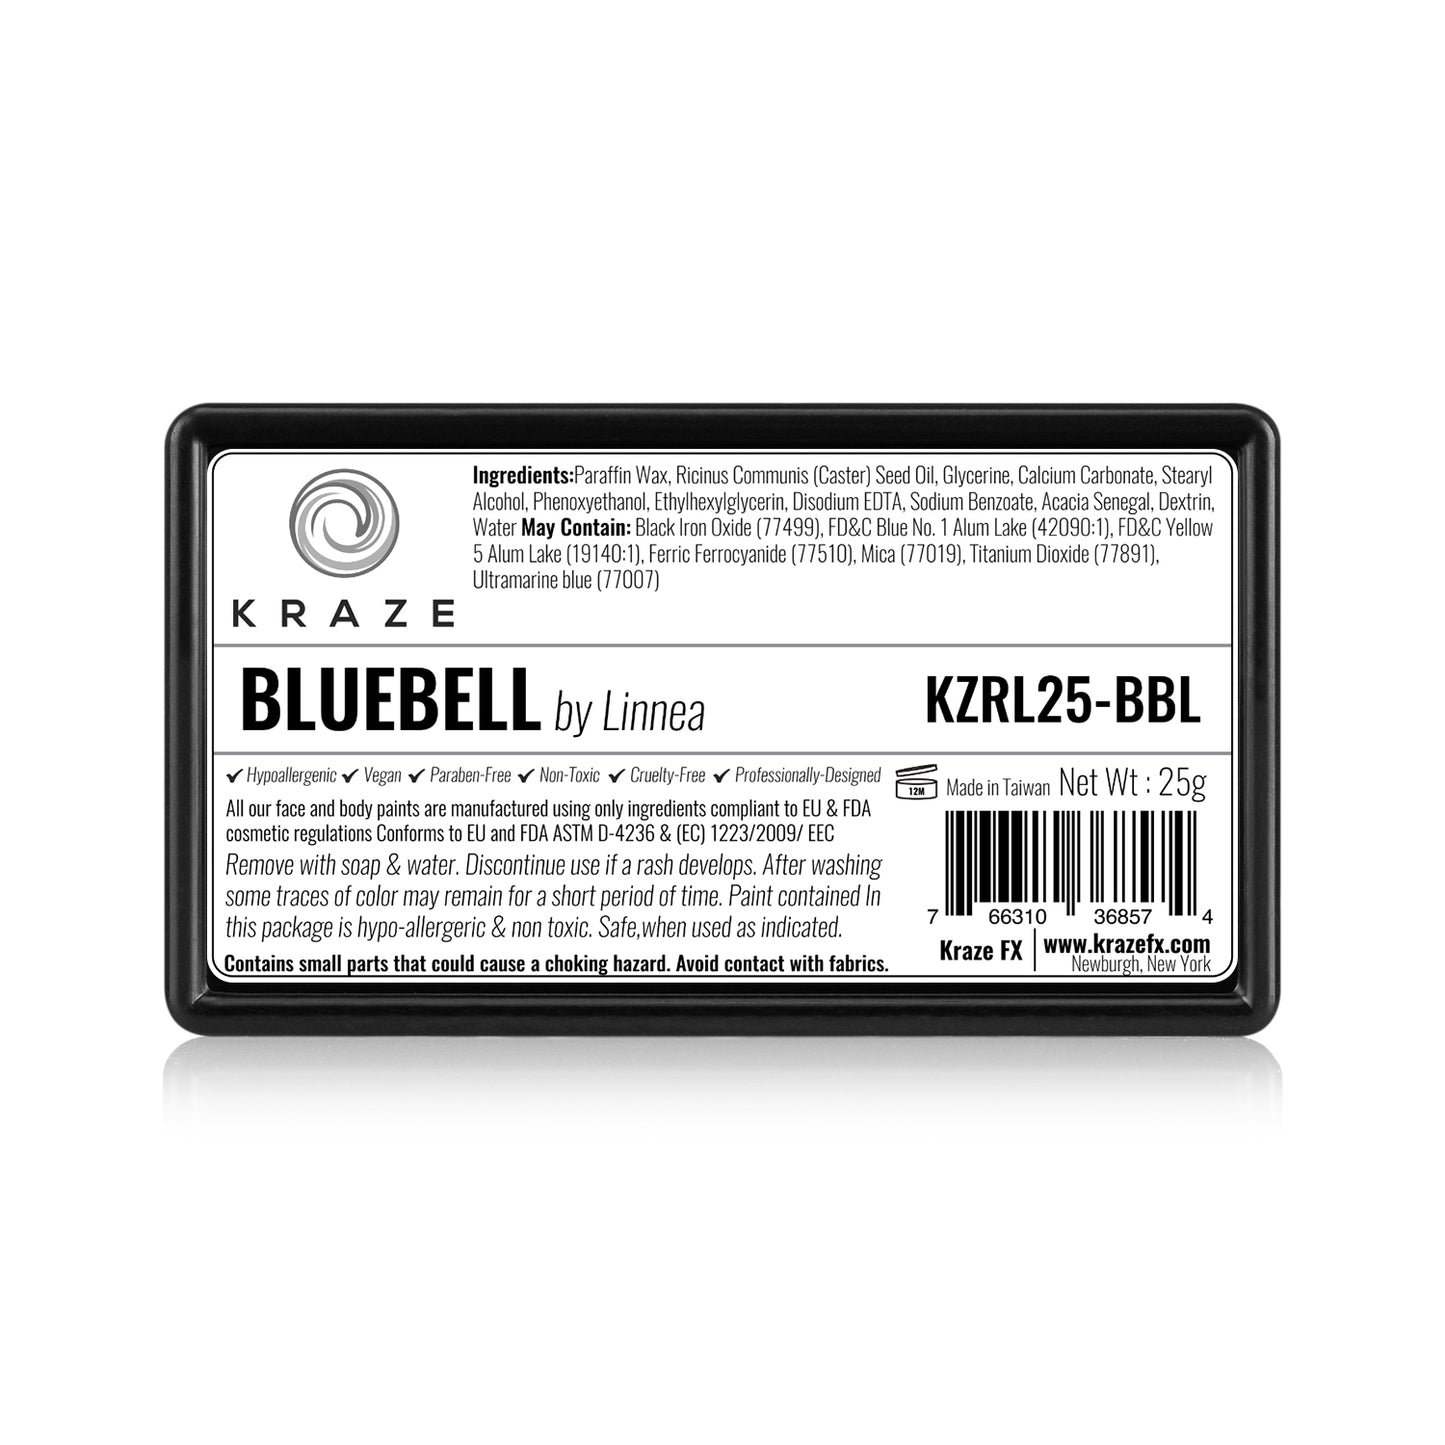 Kraze FX Dome Stroke - Bluebell by Linnea (25 gm)